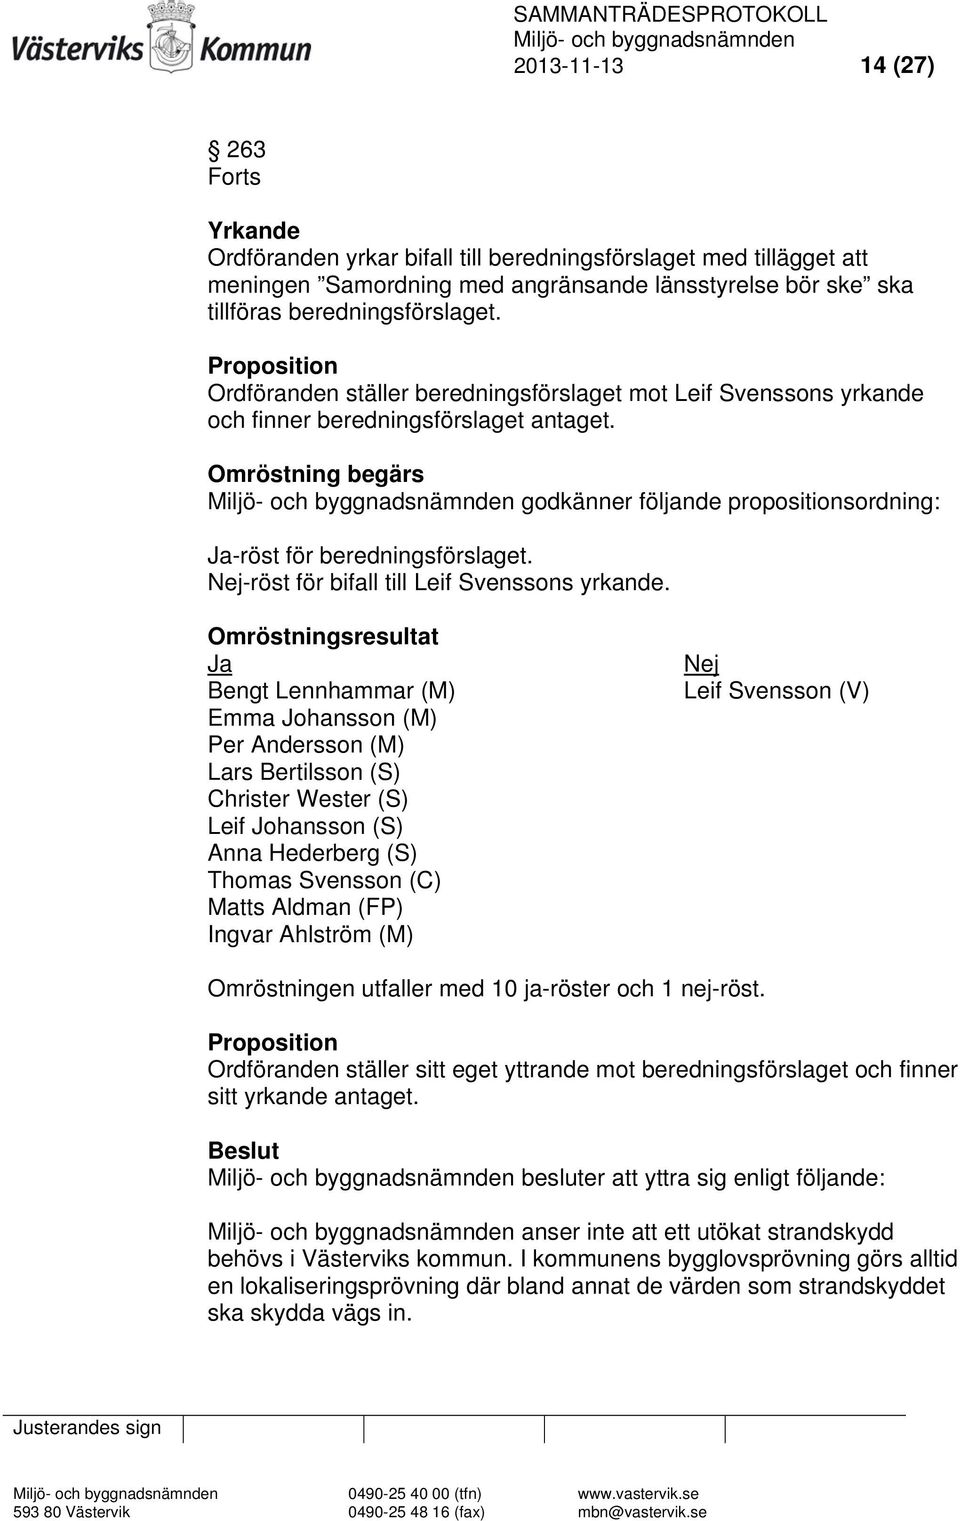 Omröstning begärs godkänner följande propositionsordning: Ja-röst för beredningsförslaget. Nej-röst för bifall till Leif Svenssons yrkande.